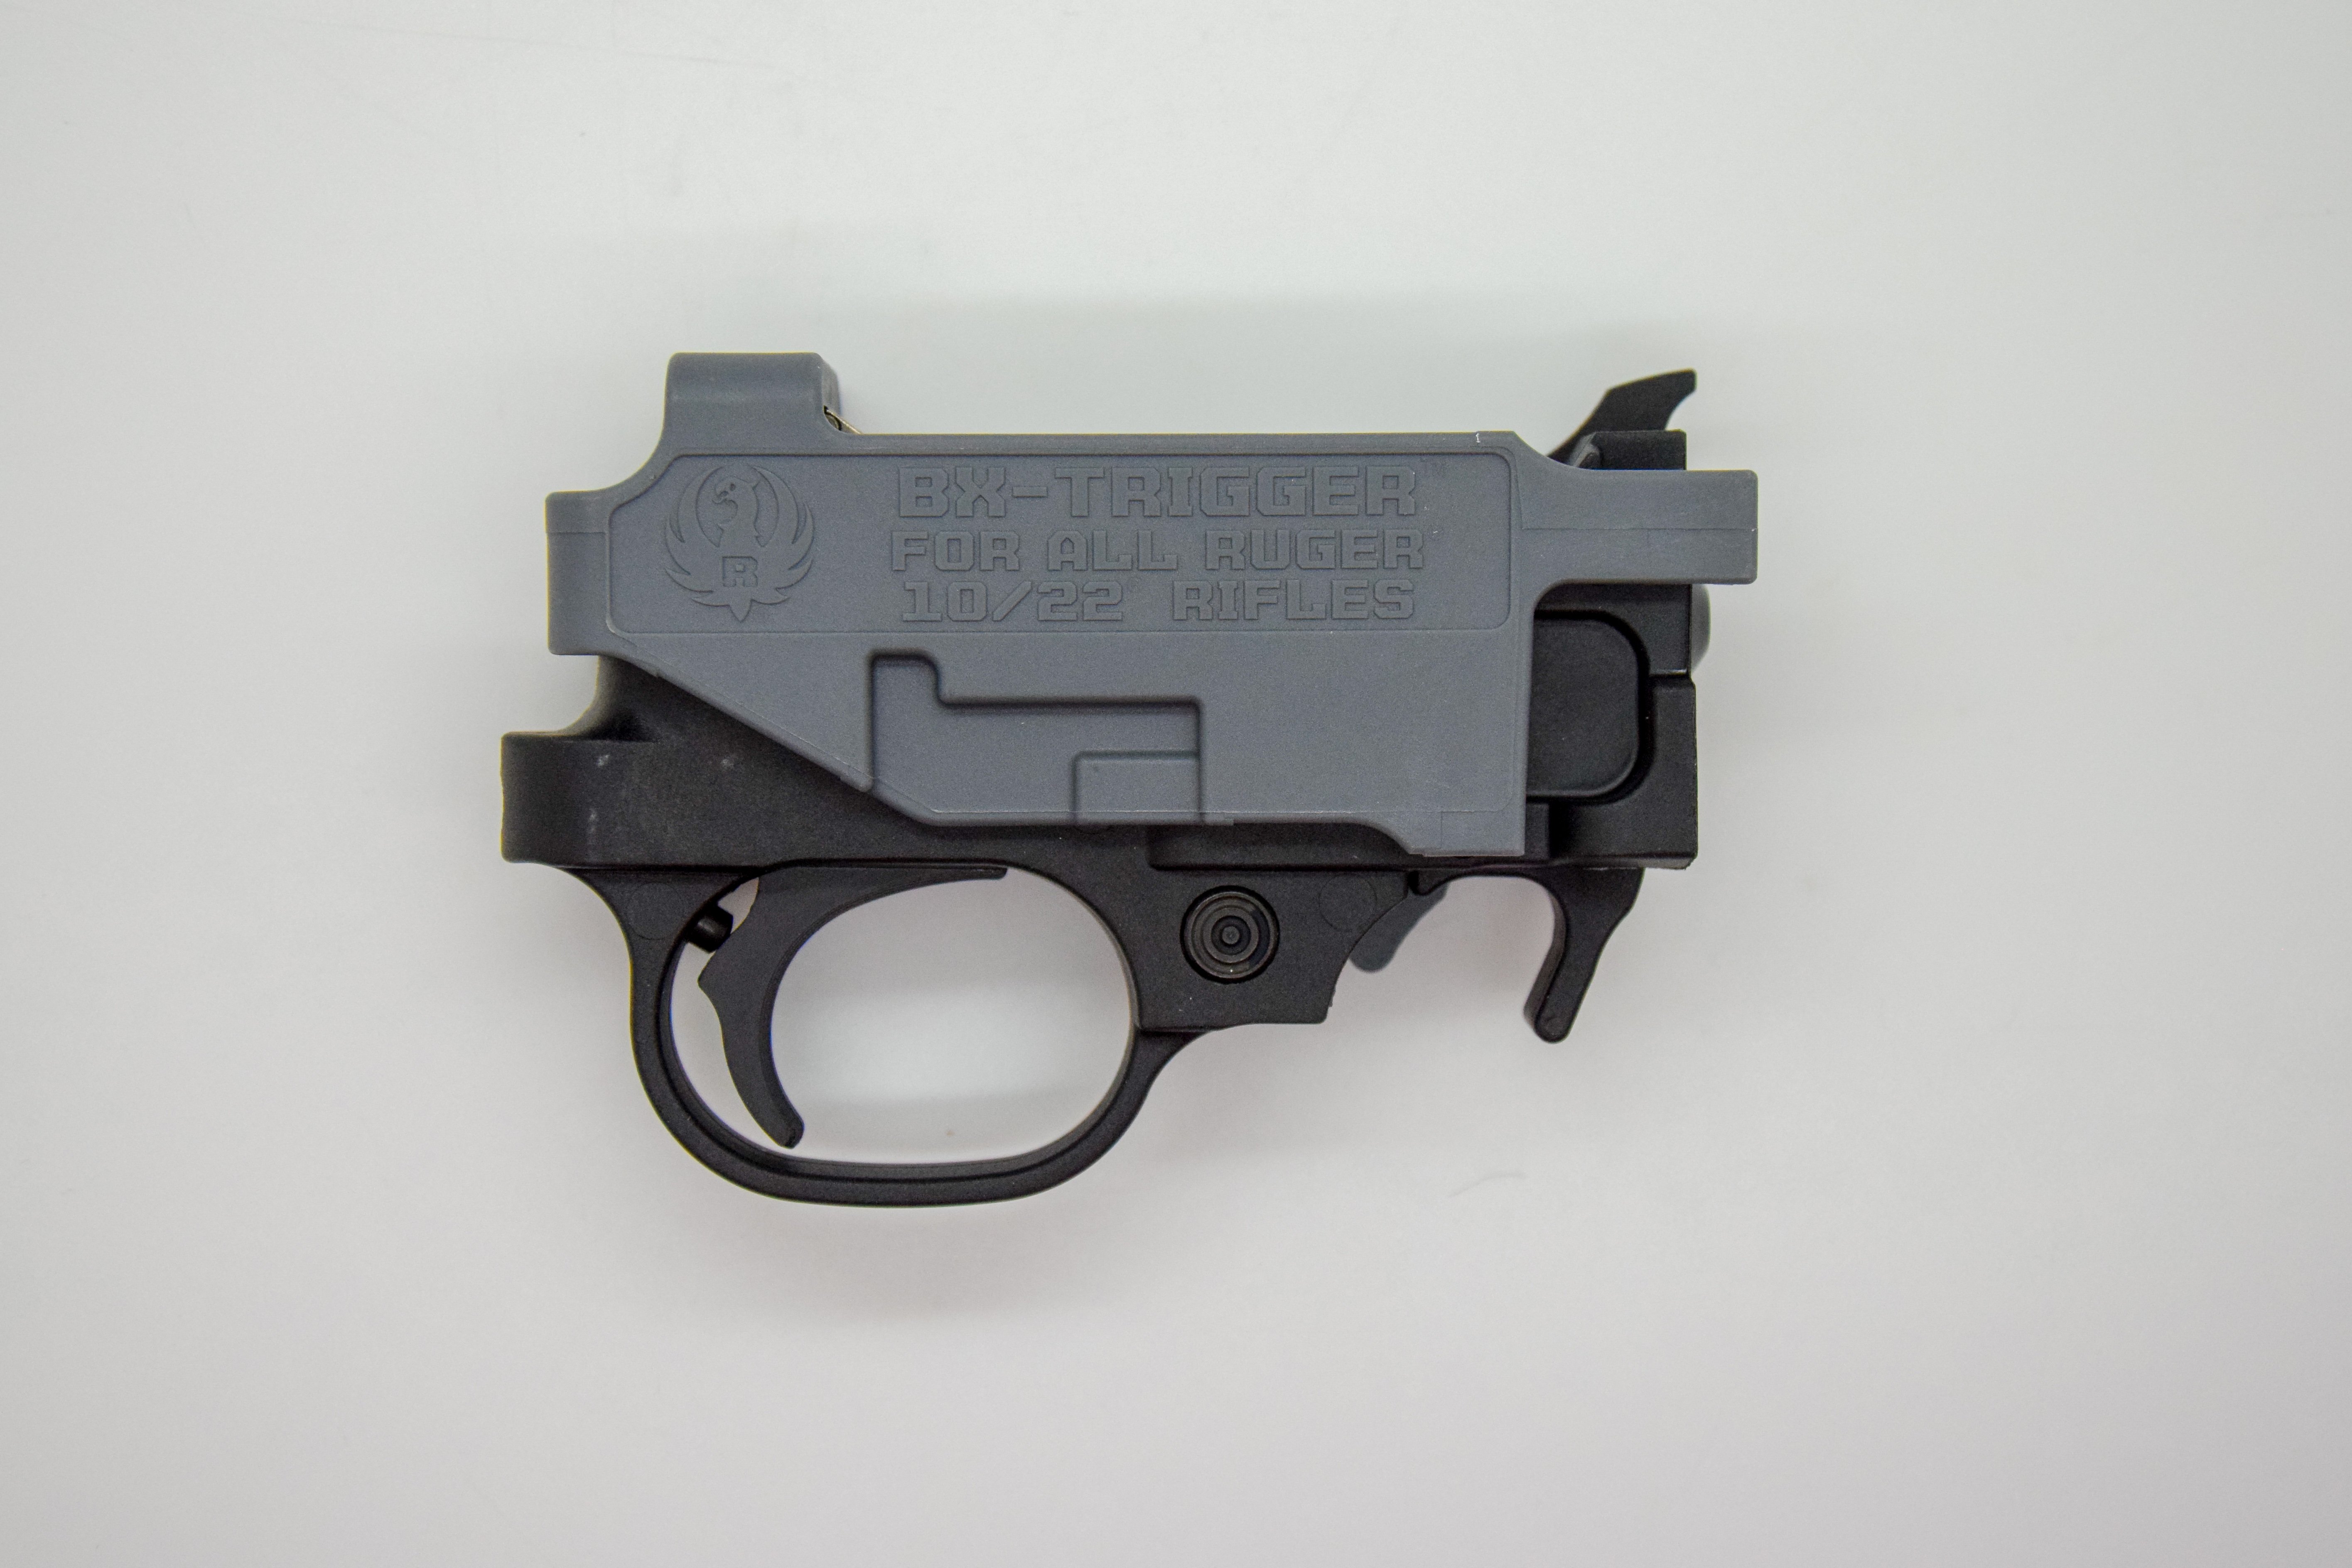 BX trigger for 10/22 rifles